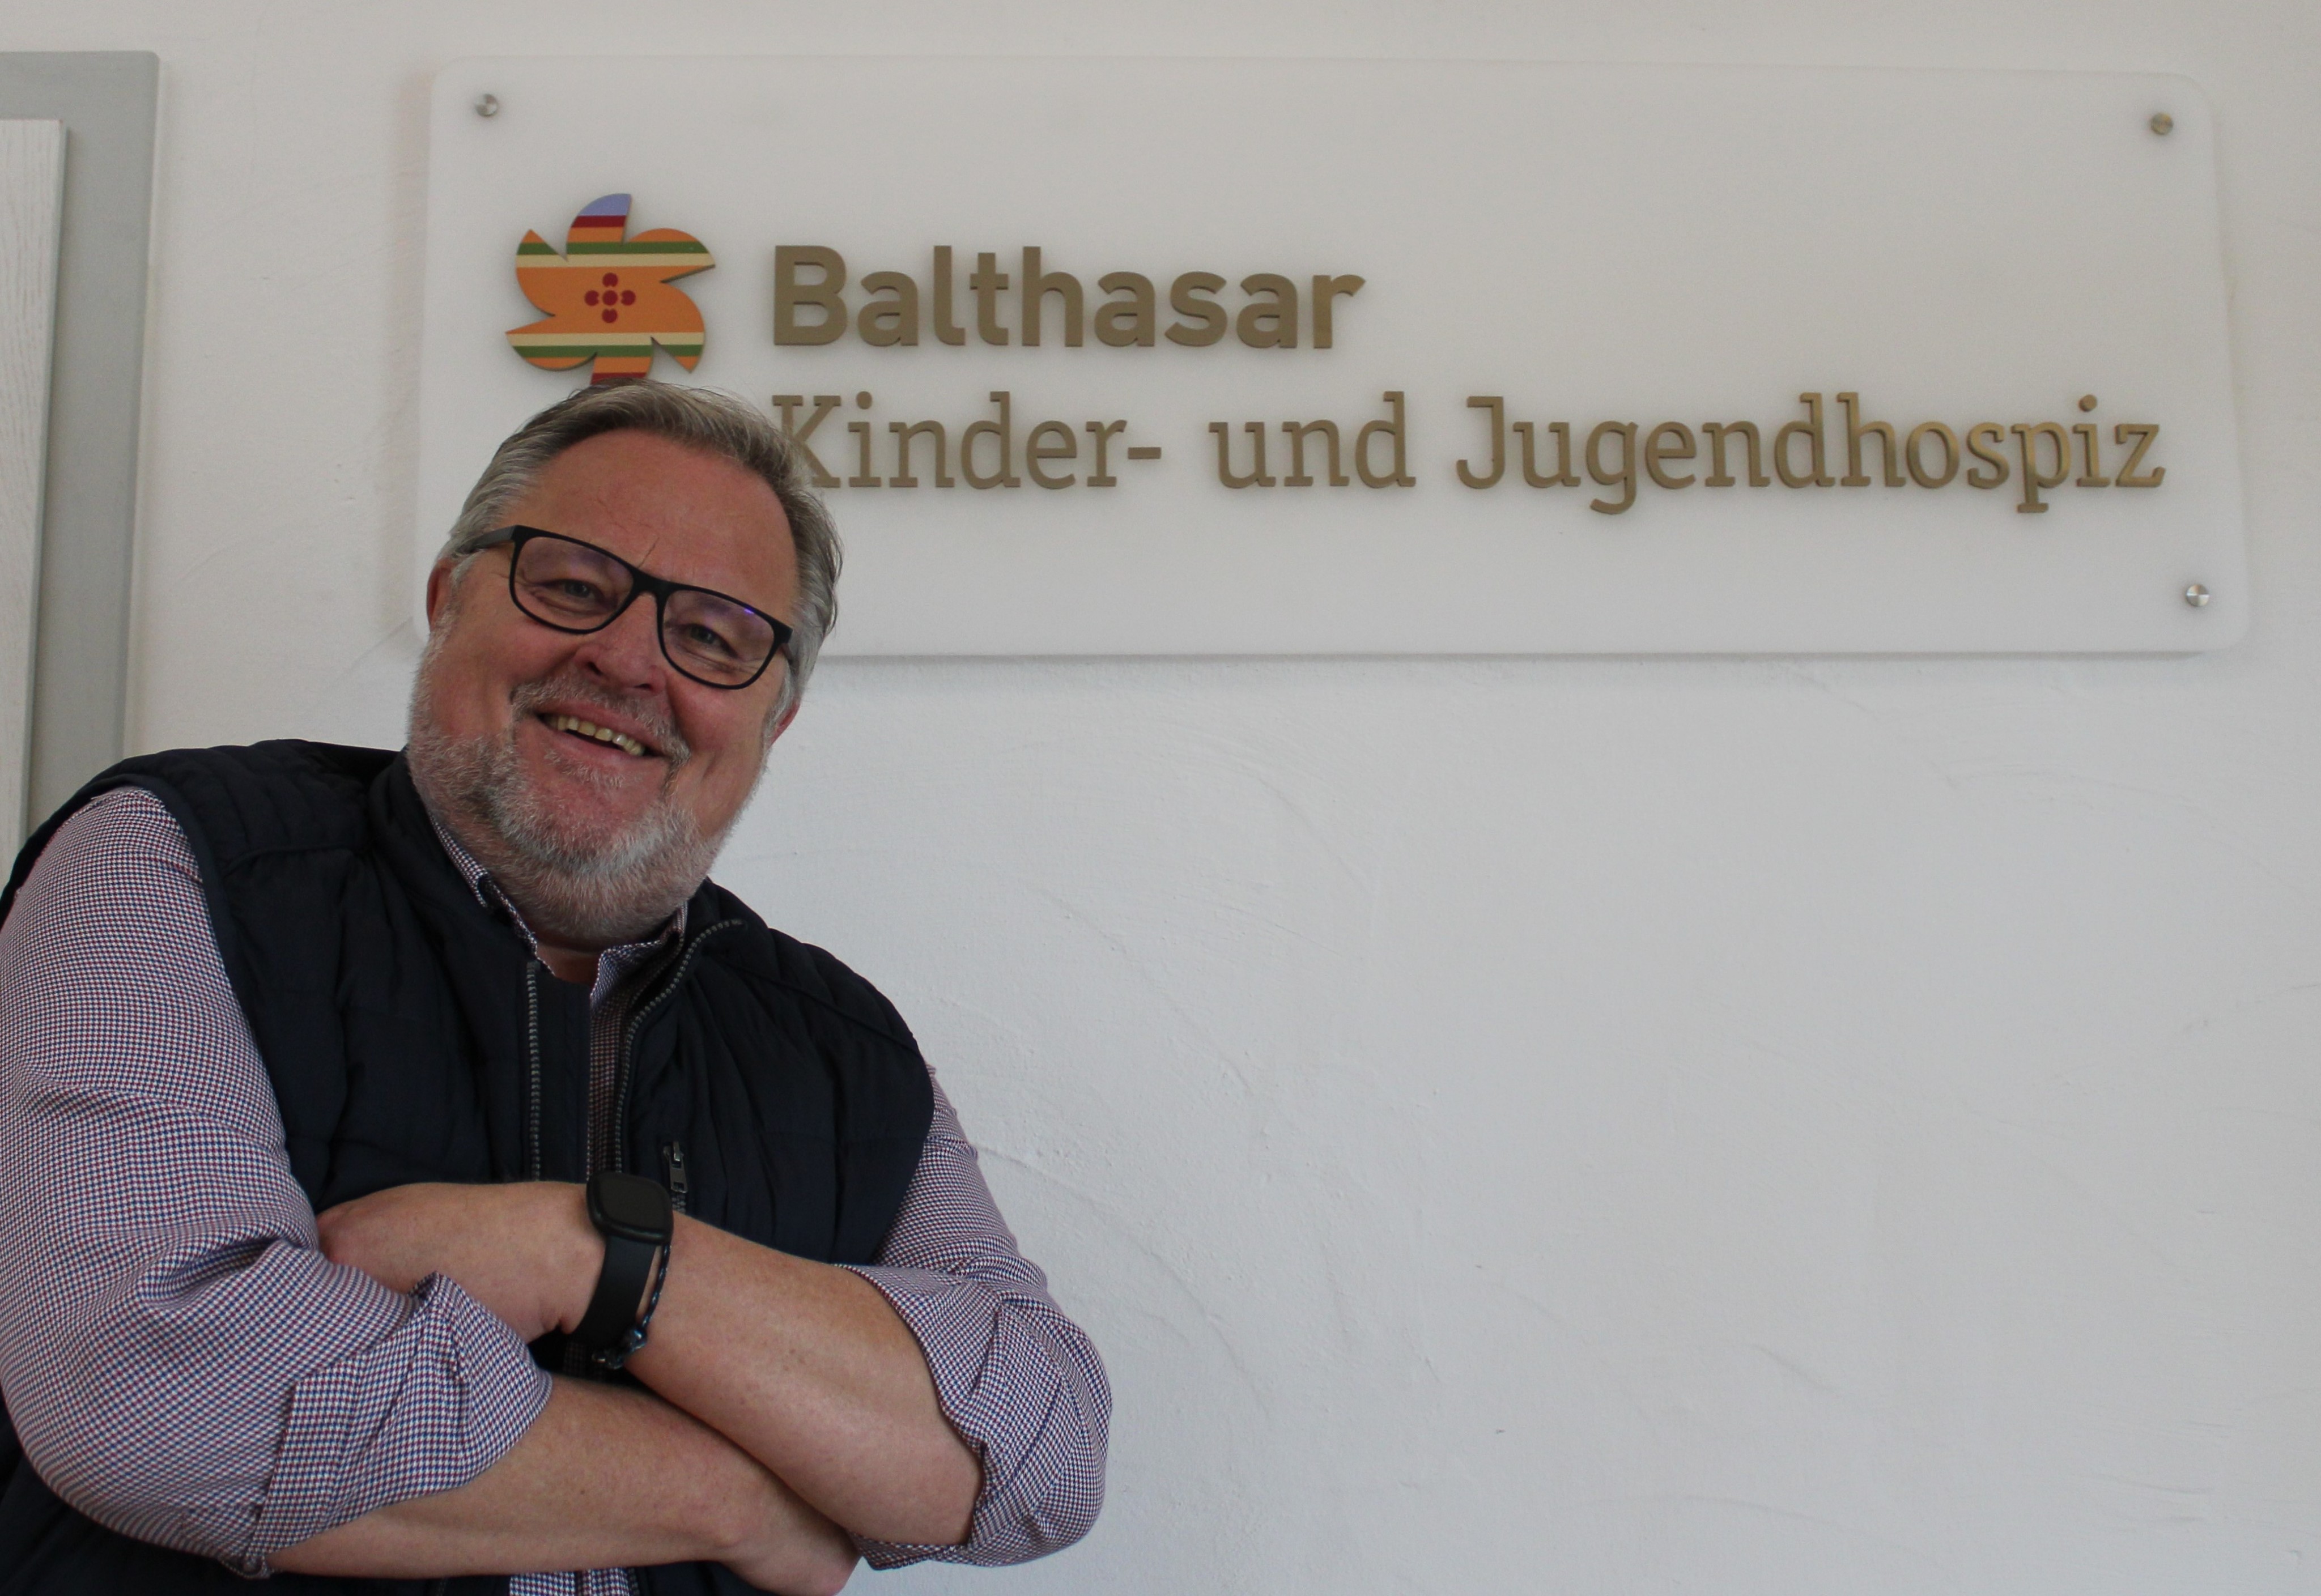 20 Jahre lang leitete Rüdiger Barth das Kinder- und Jugendhospiz Balthasar in Olpe. Nun hat er den vorzeitigen Ruhestand angetreten. von Lorena Klein